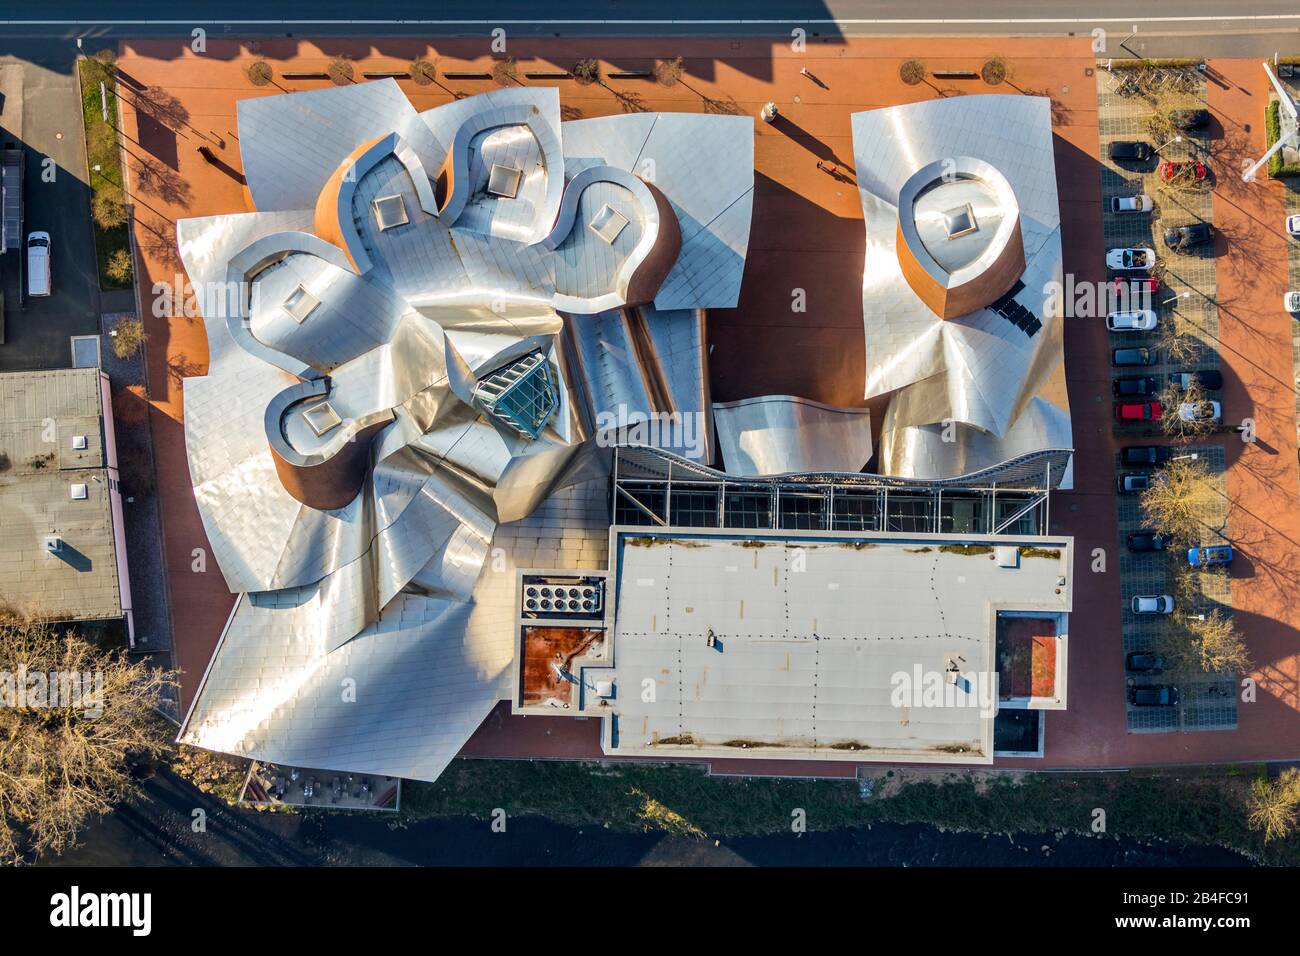 Vue aérienne du musée Marta à Herford, du musée d'art Marta Herford, de l'architecture, du design à Ostwestfalen dans l'État de Rhénanie-du-Nord-Westphalie, Allemagne. Banque D'Images